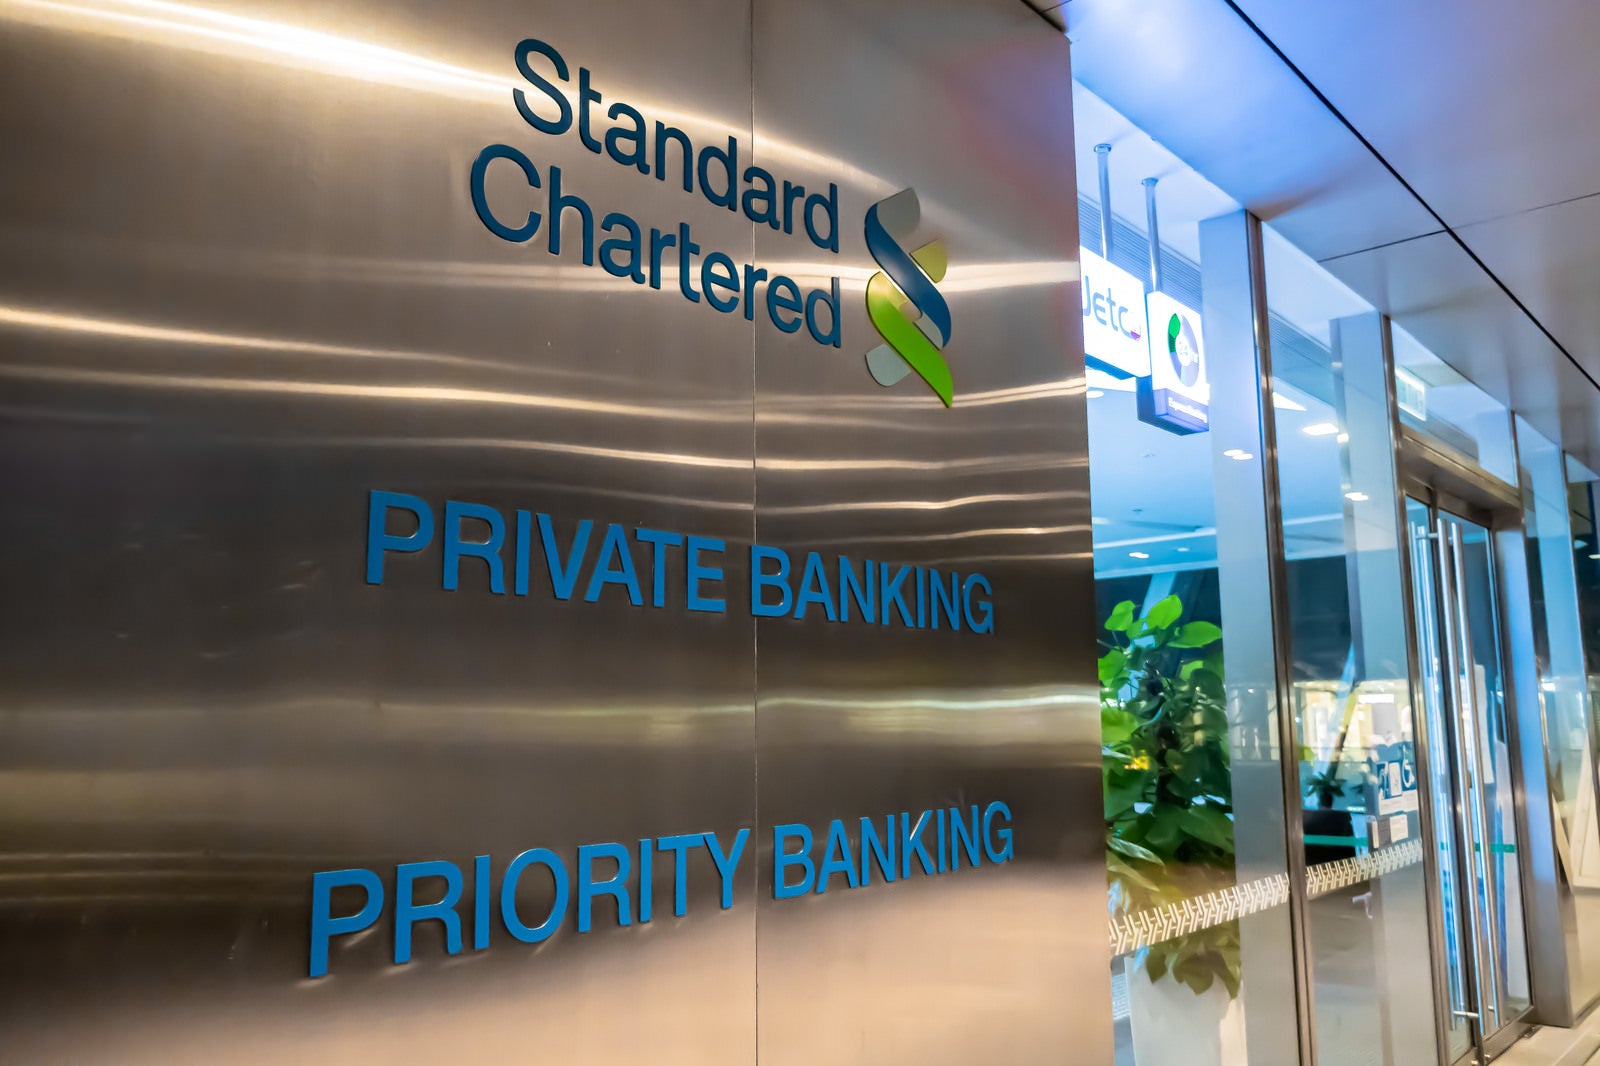 「ロンドンに本拠地を構えるスタンダードチャータード銀行のプライベートバンクとプライオリティバンク」の写真